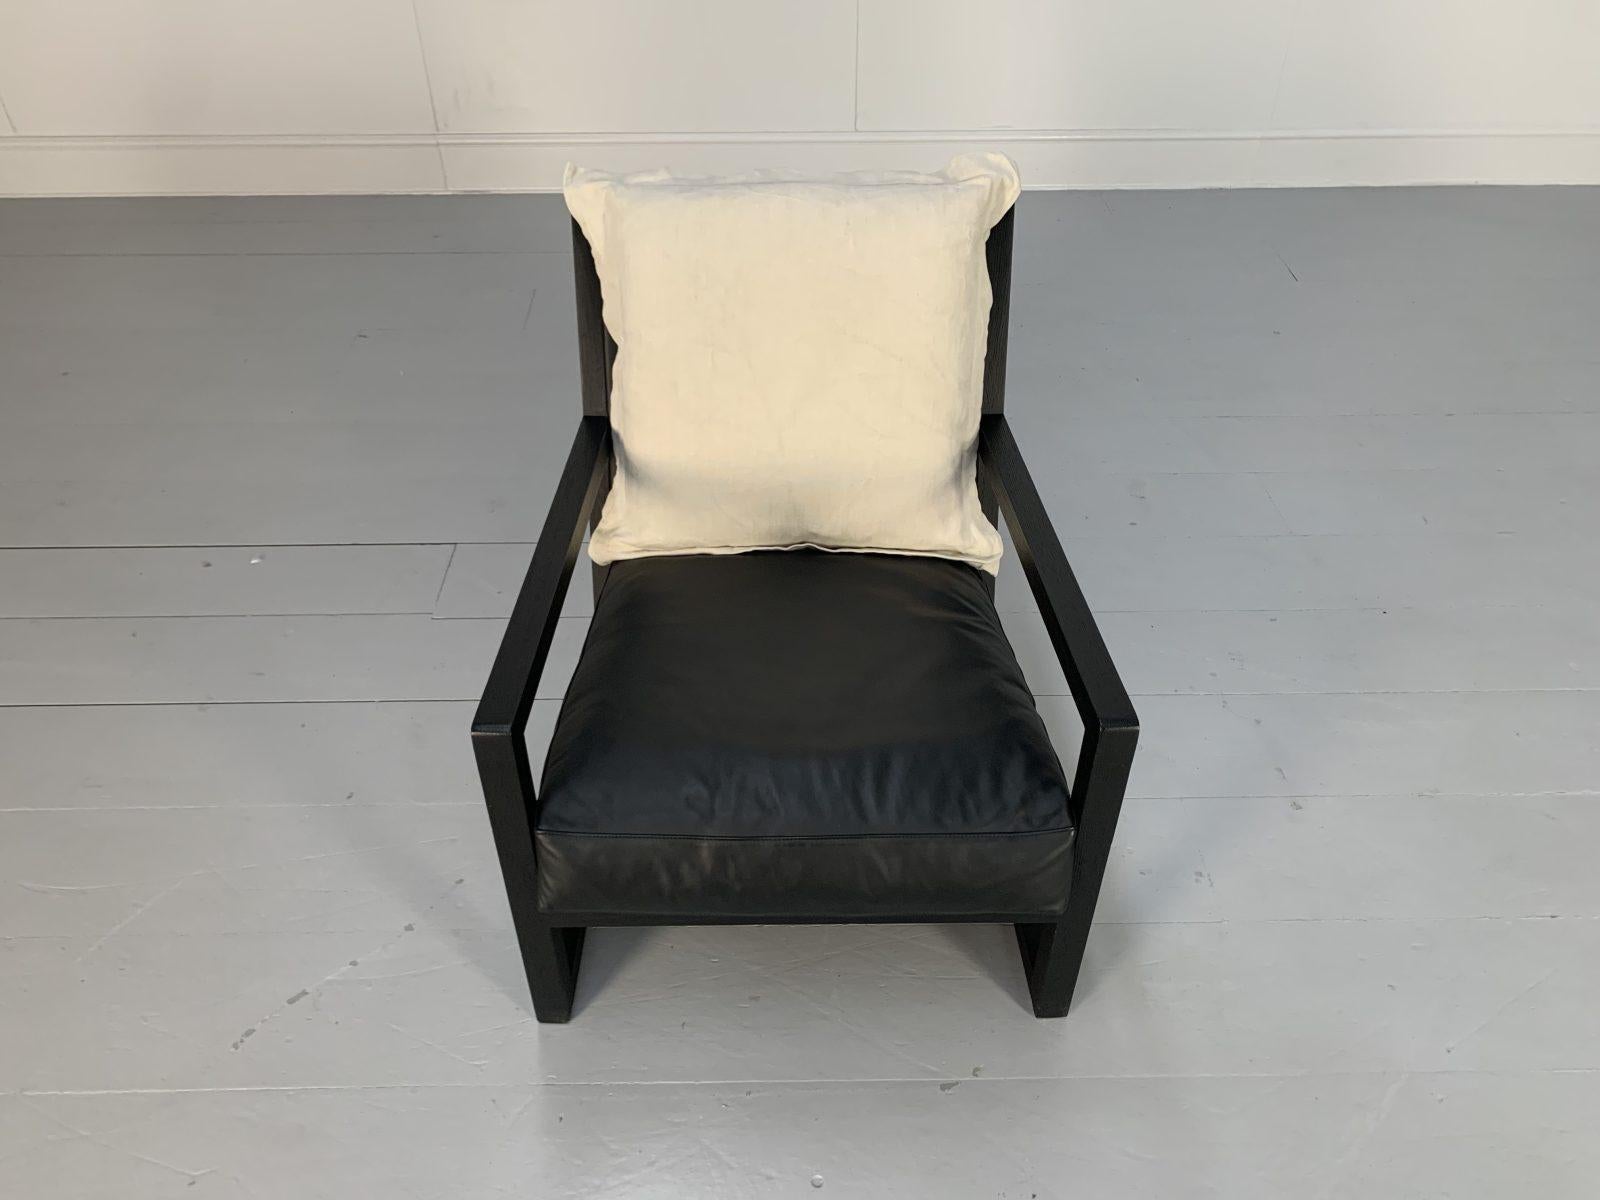 B&B Italia “Maxalto Clio” Armchairs, in Black Leather & Linen X4 For Sale 9